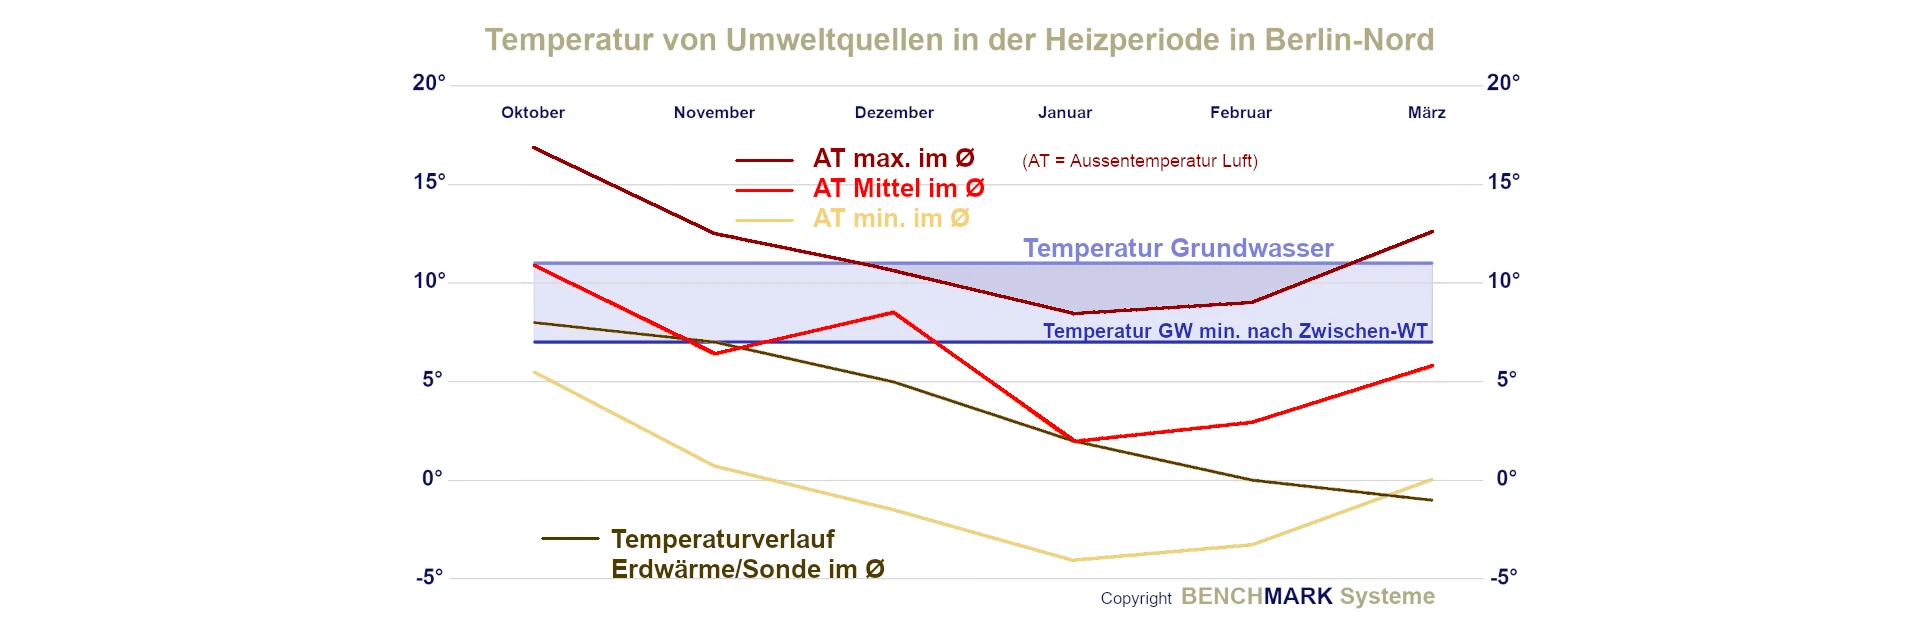 Wärmepumpe Berlin und Energiewende - Temperaturverlauf der Energiequellen Luft Grundwasser im Vergleich